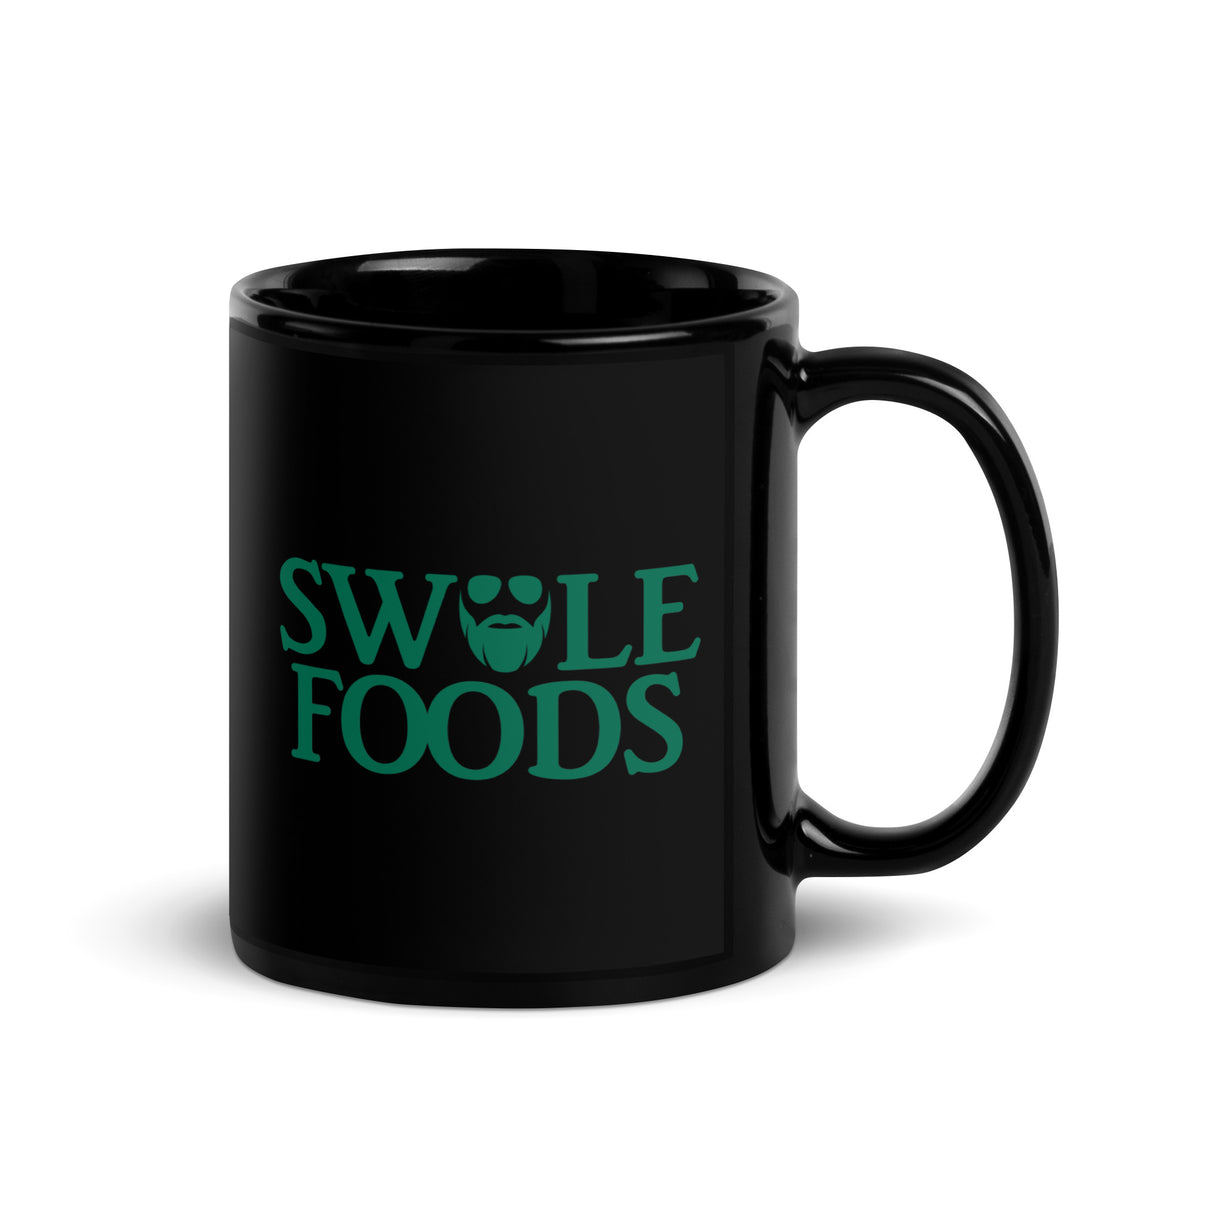 Swole Foods Mug